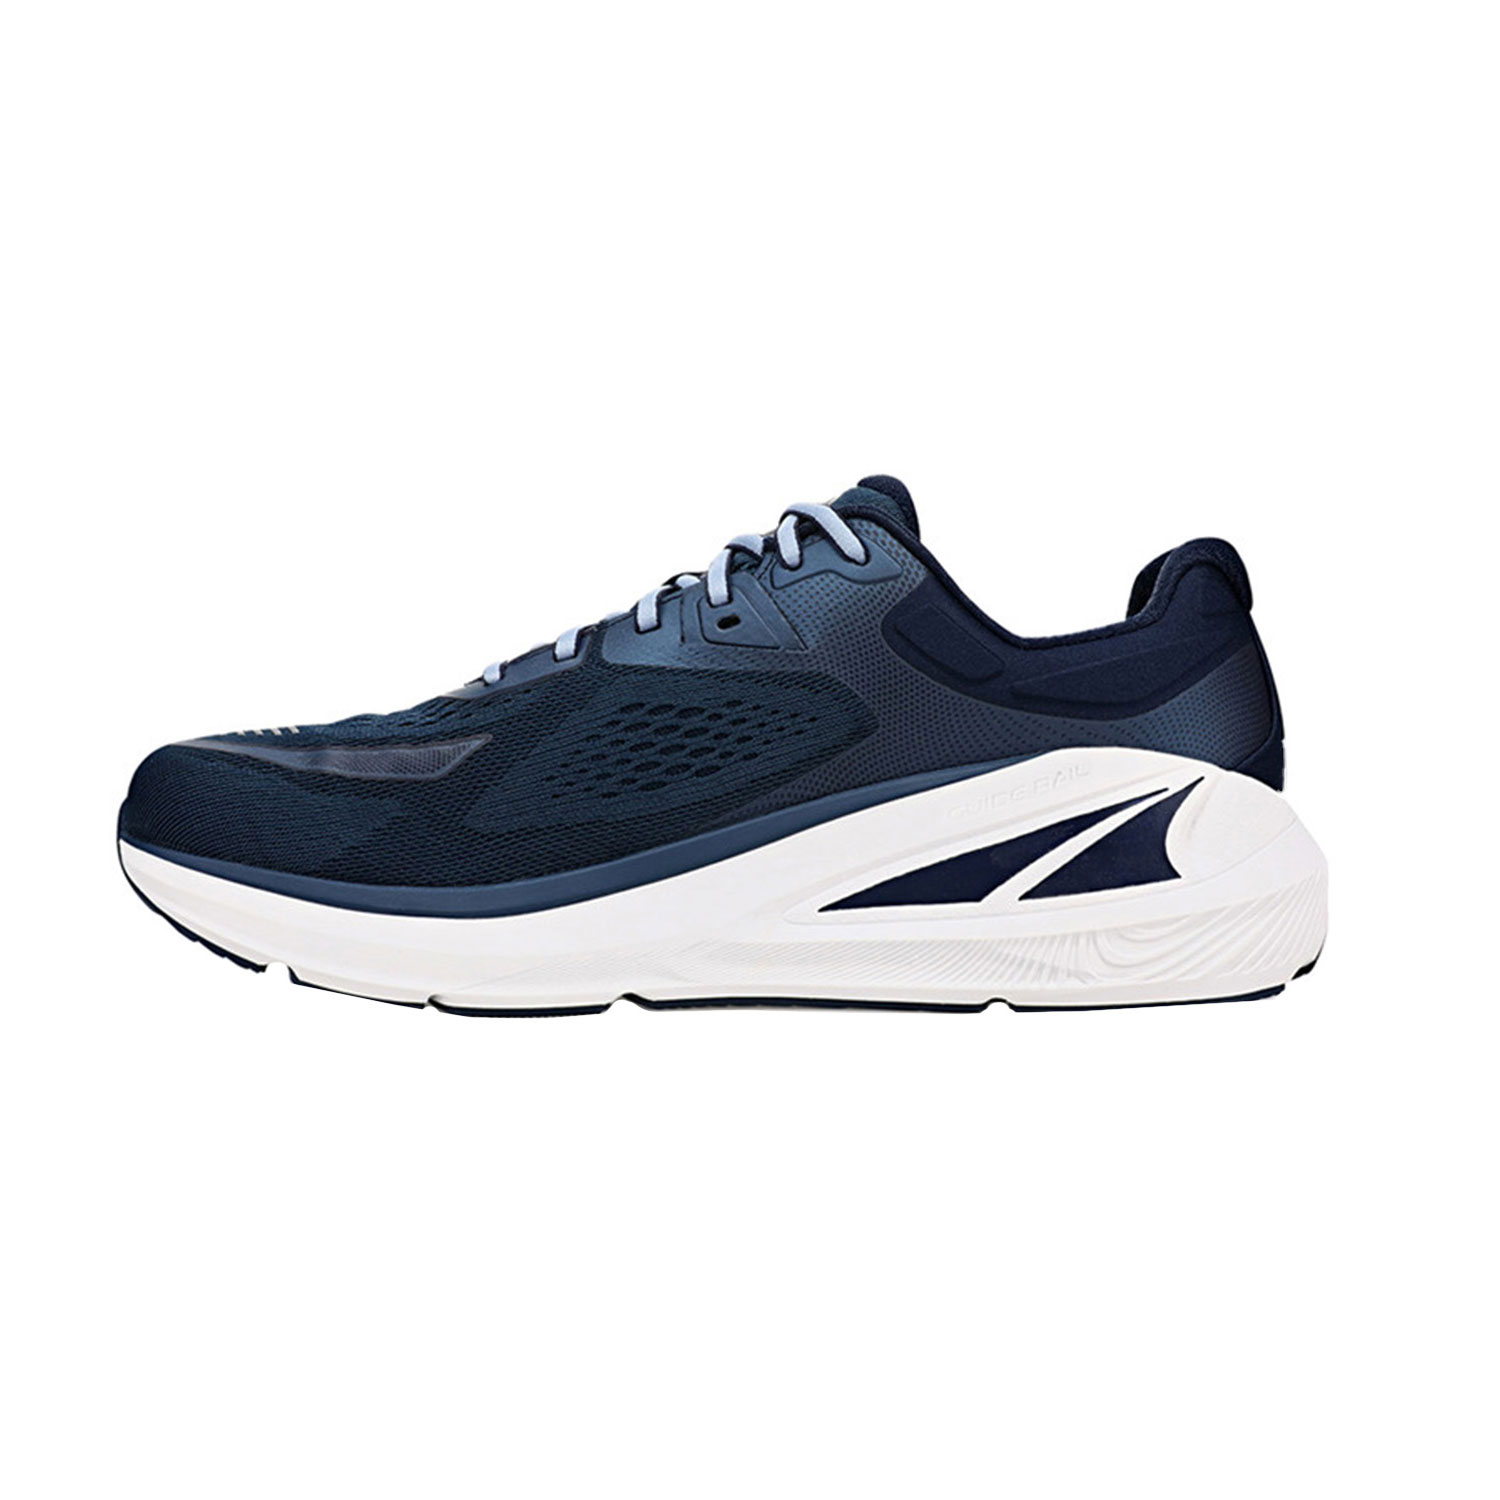 Altra Paradigm 6 Men's Running Shoes - Navy/Light Blue